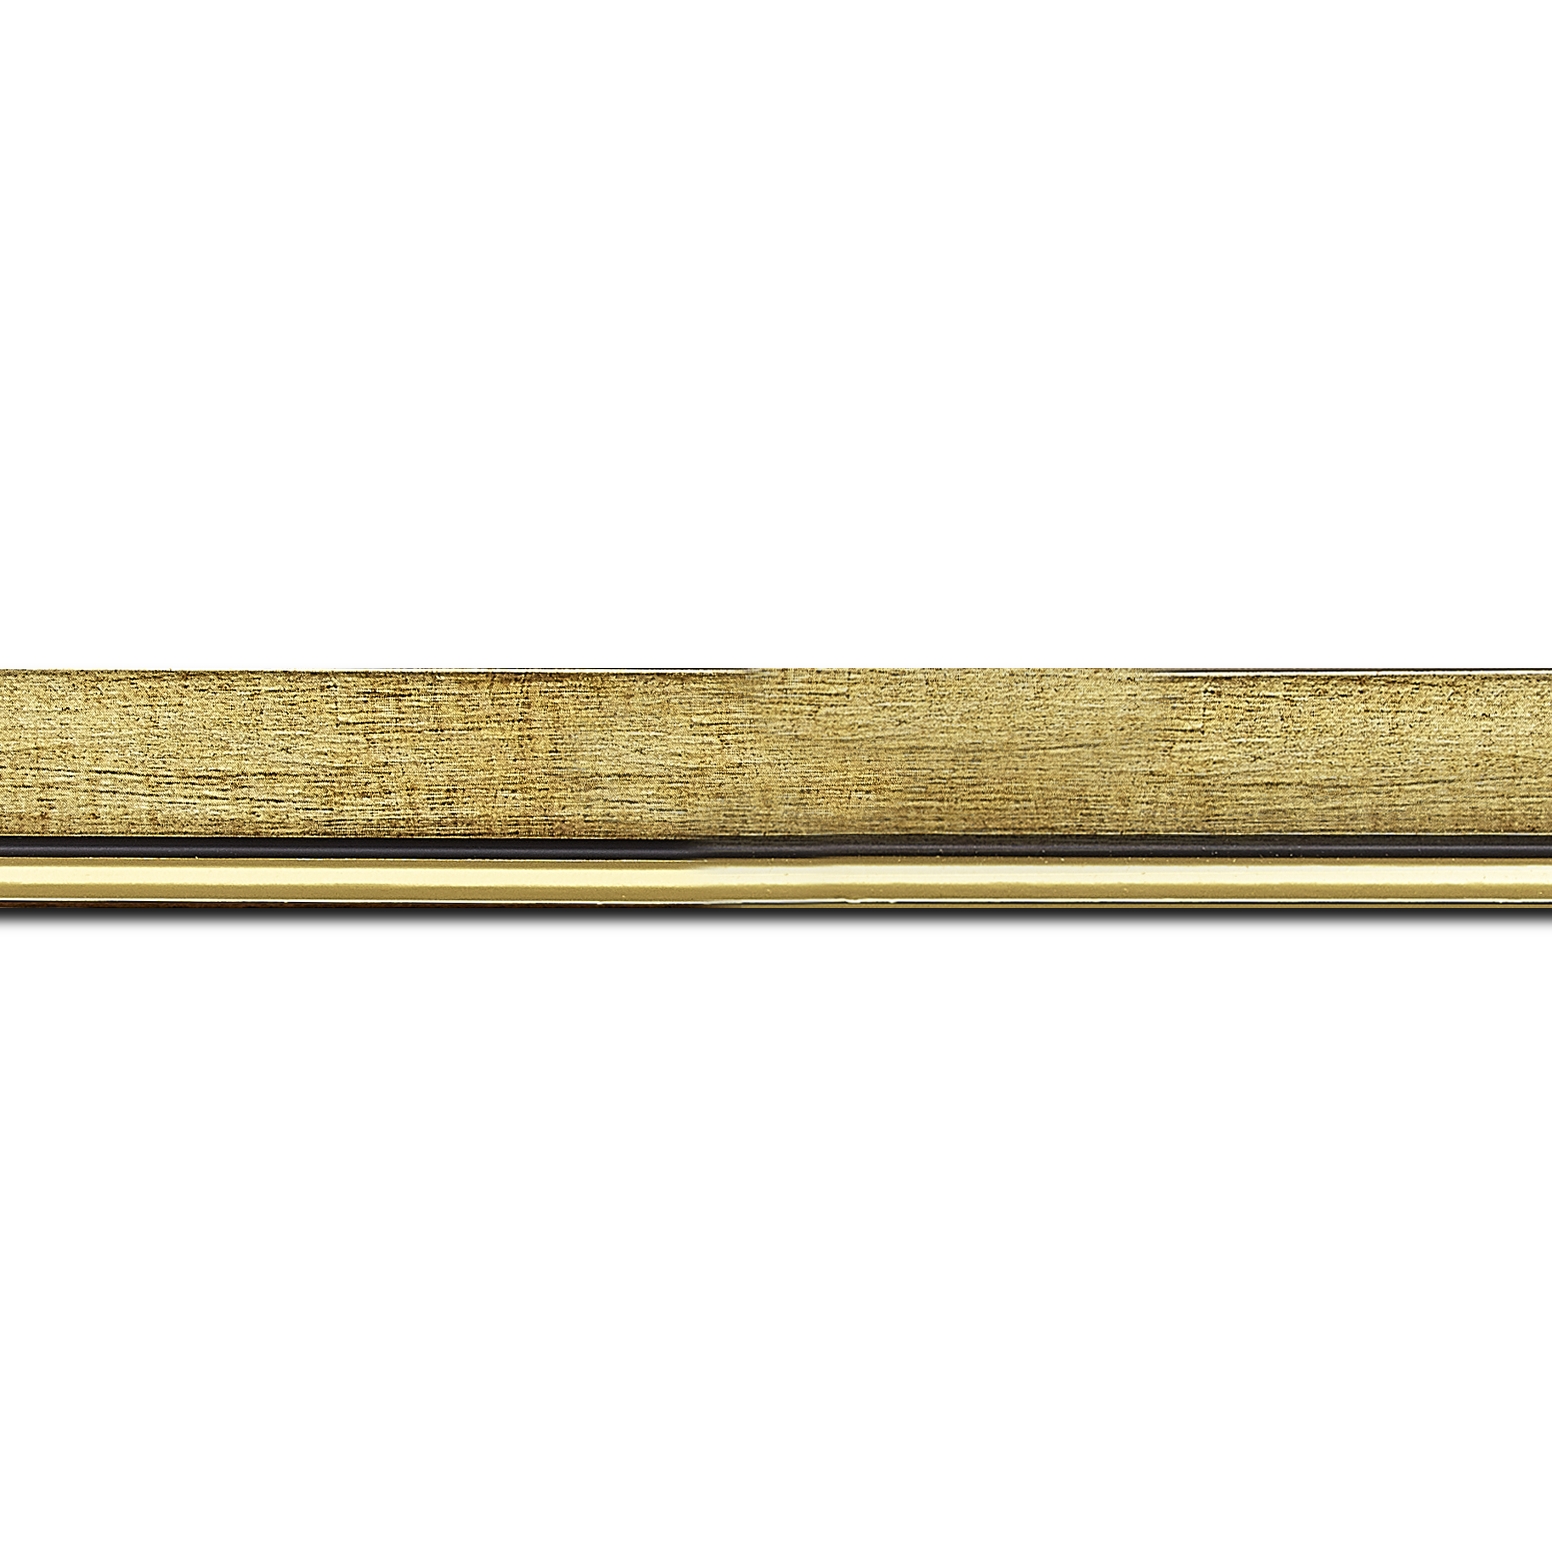 Baguette longueur 1.40m bois profil plat largeur 2.5cm couleur or filet or surligné noir